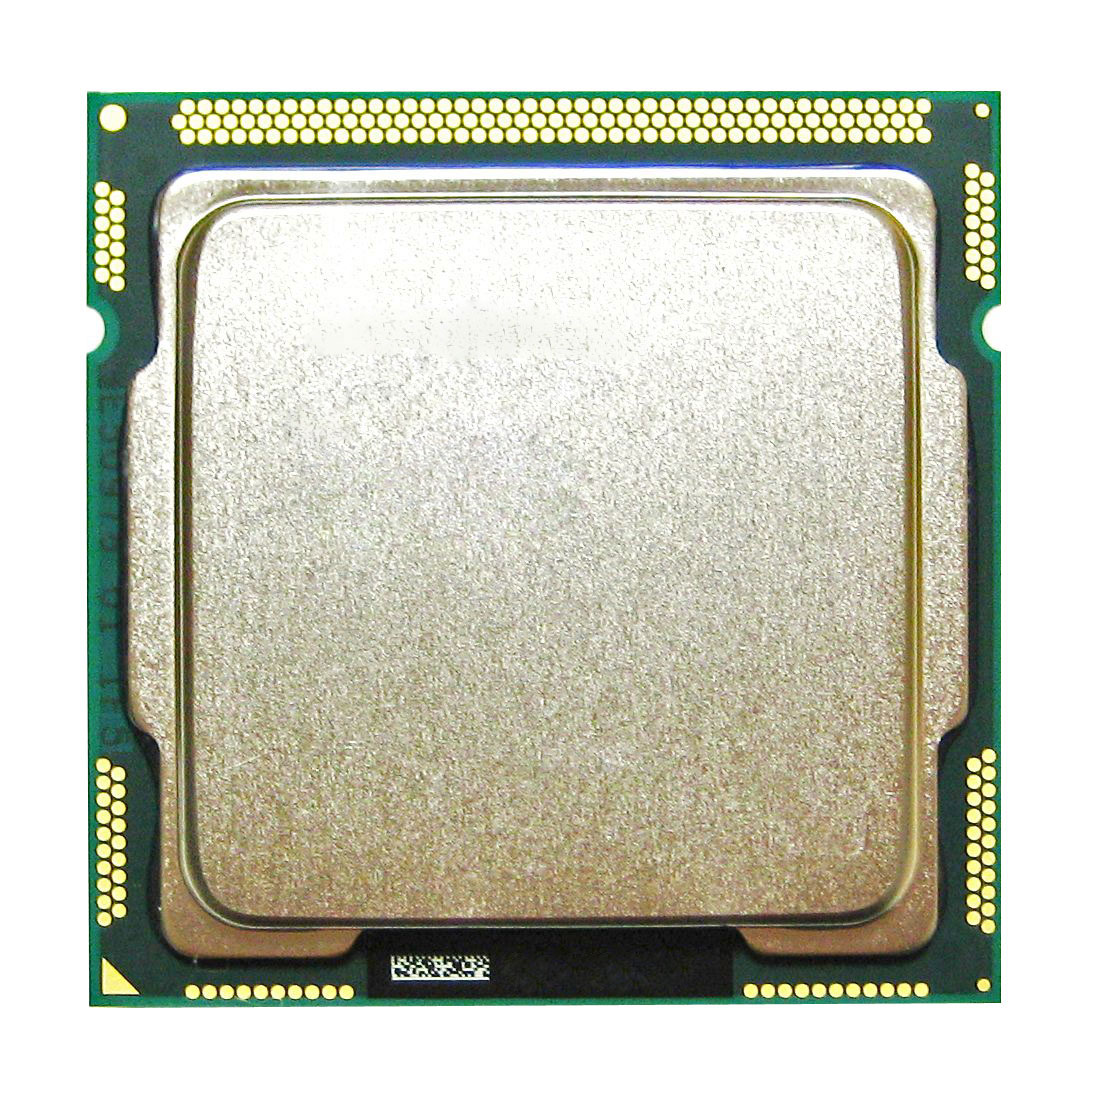 BW855AV HP 3.30GHz 5.00GT/s DMI 6MB L3 Cache Intel Core i5-2500 Quad Core Desktop Processor Upgrade